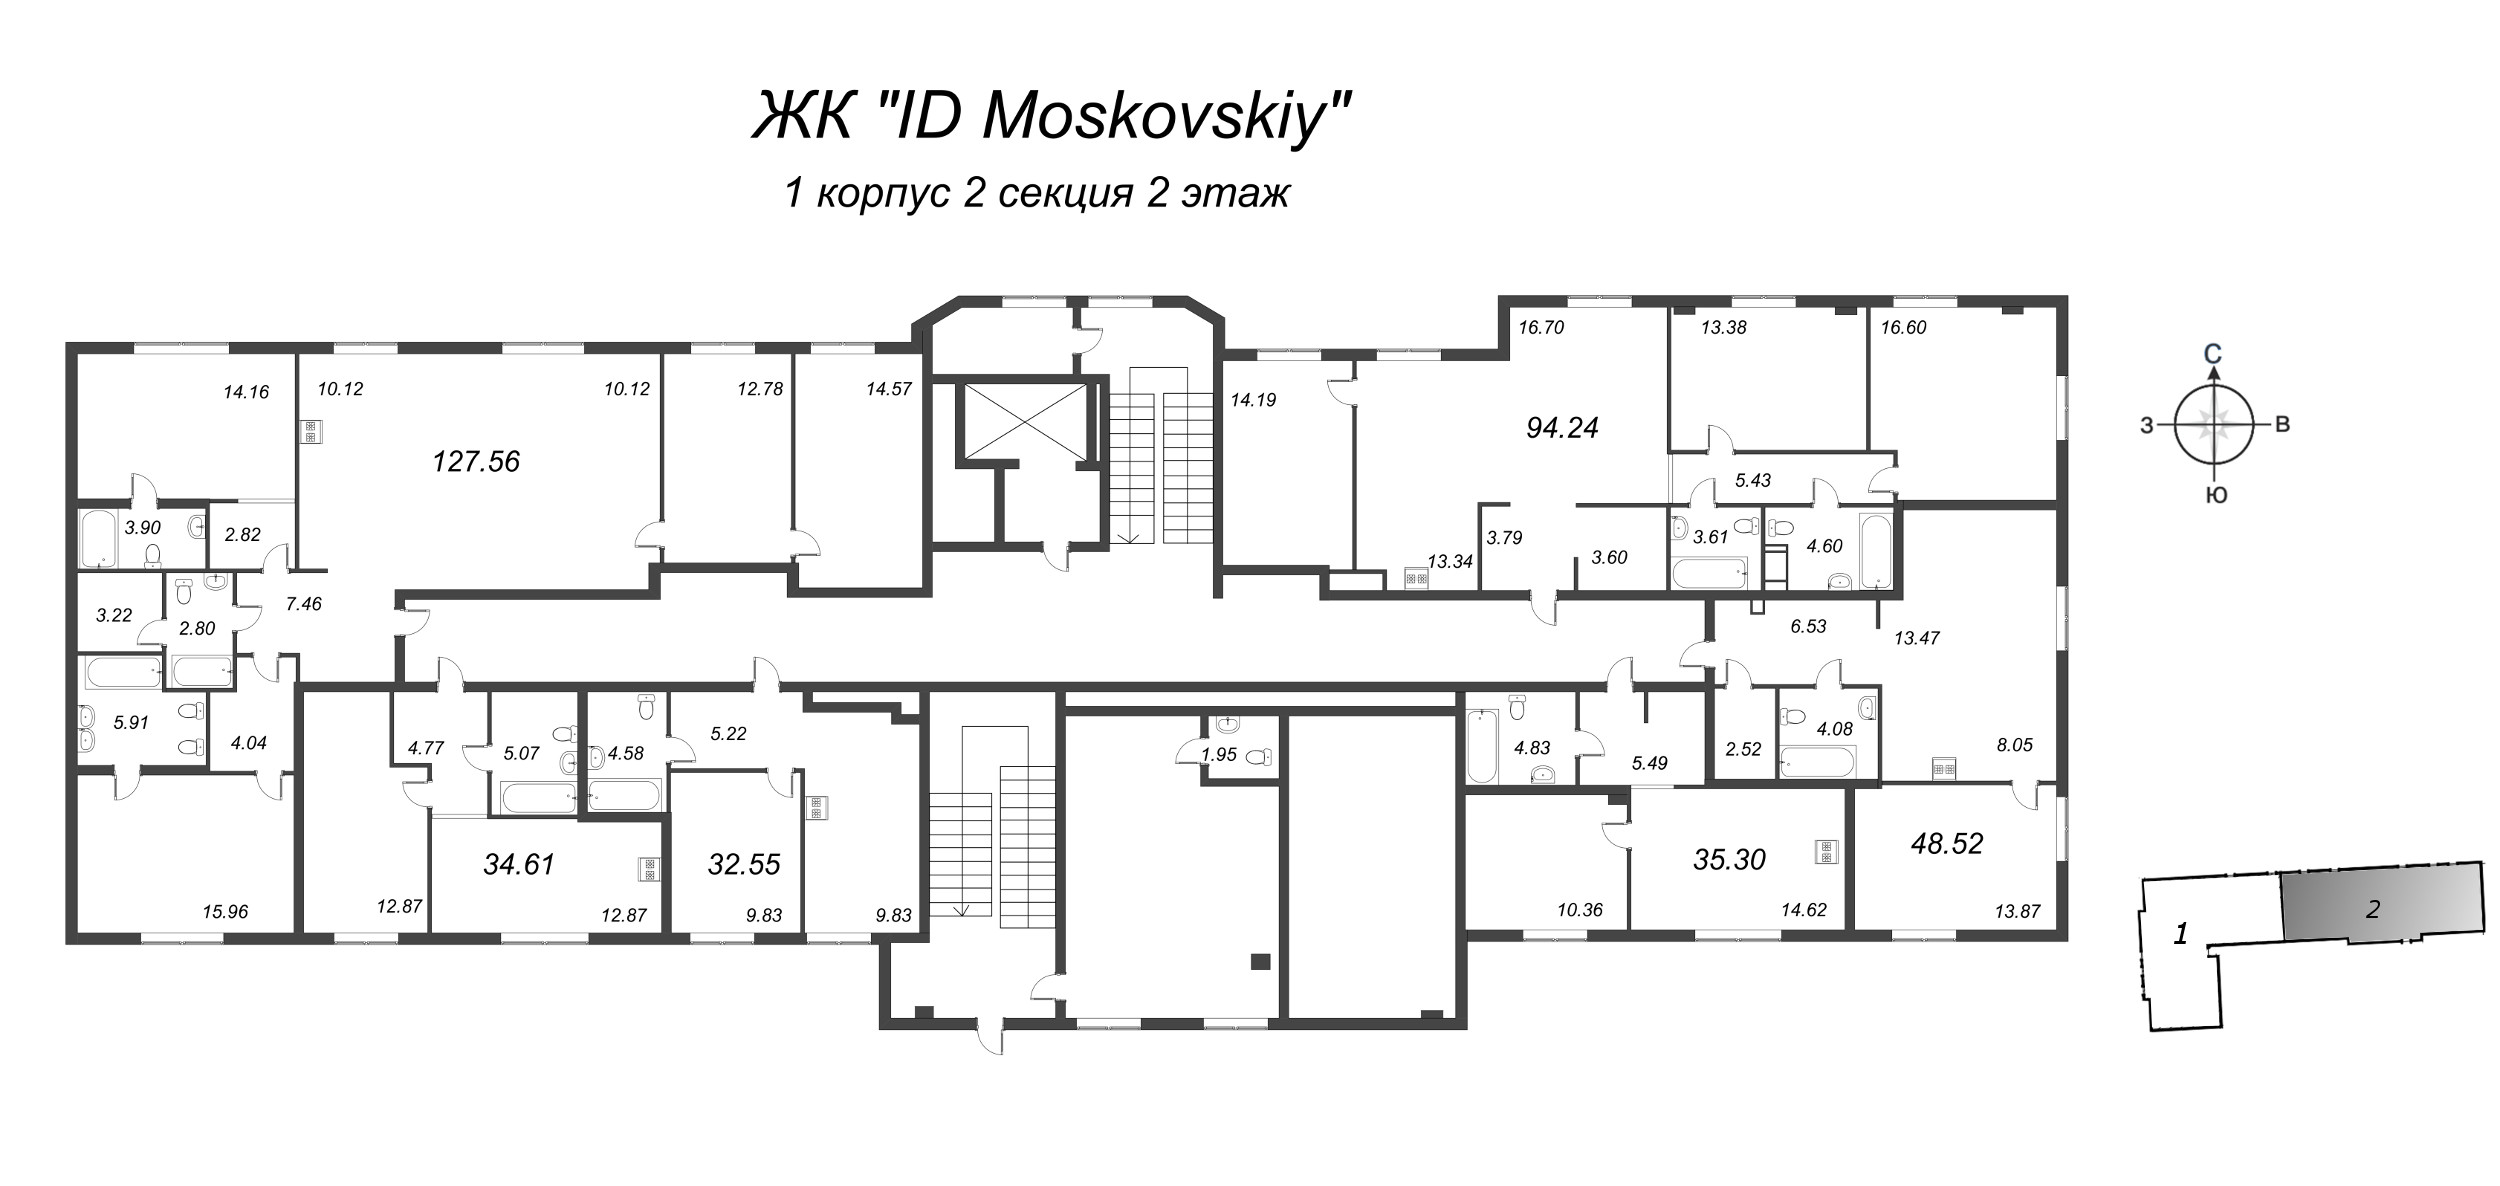 4-комнатная (Евро) квартира, 94.24 м² в ЖК "ID Moskovskiy" - планировка этажа